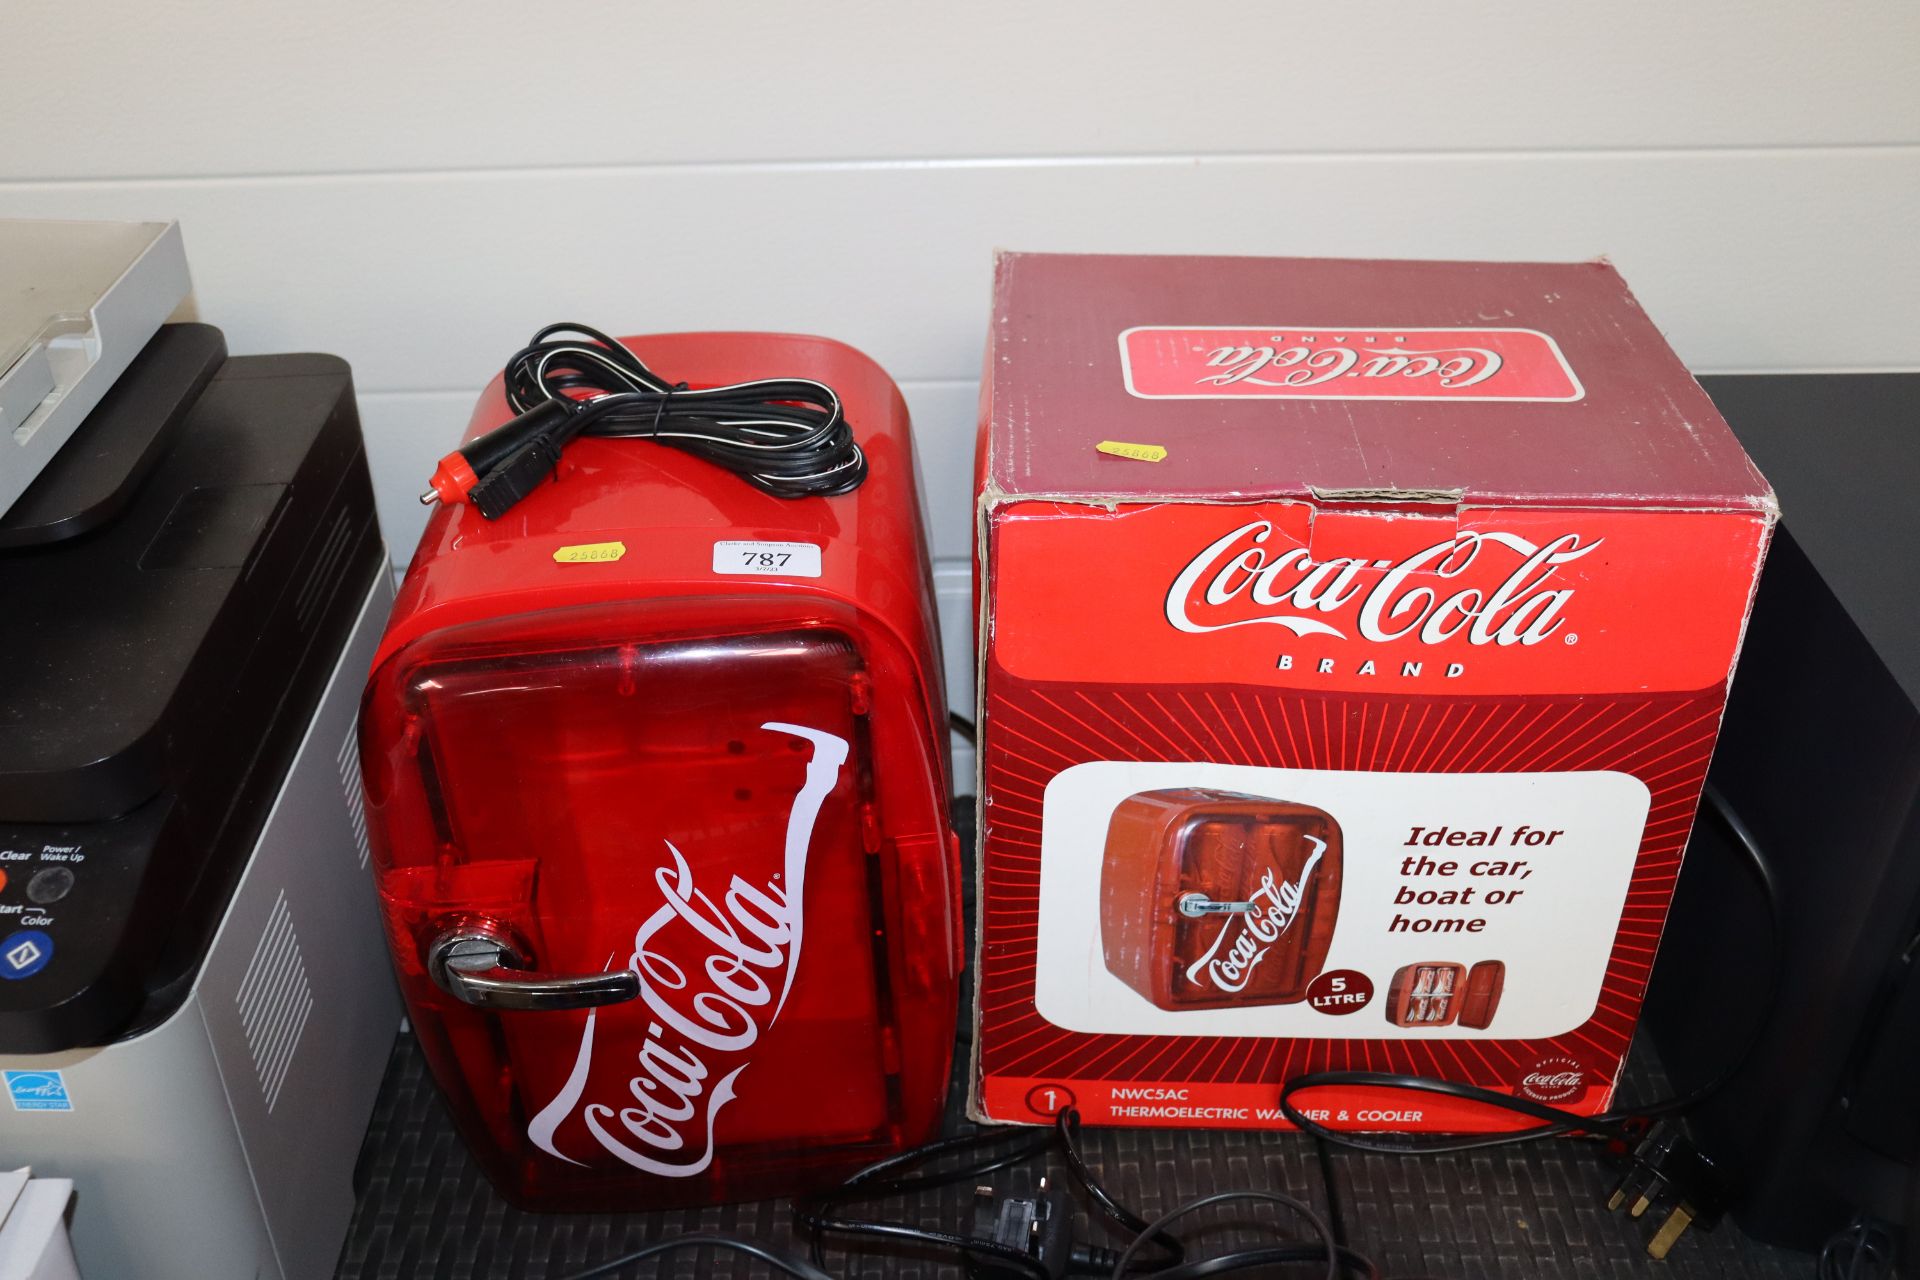 A Coca-Cola mini fridge with original box